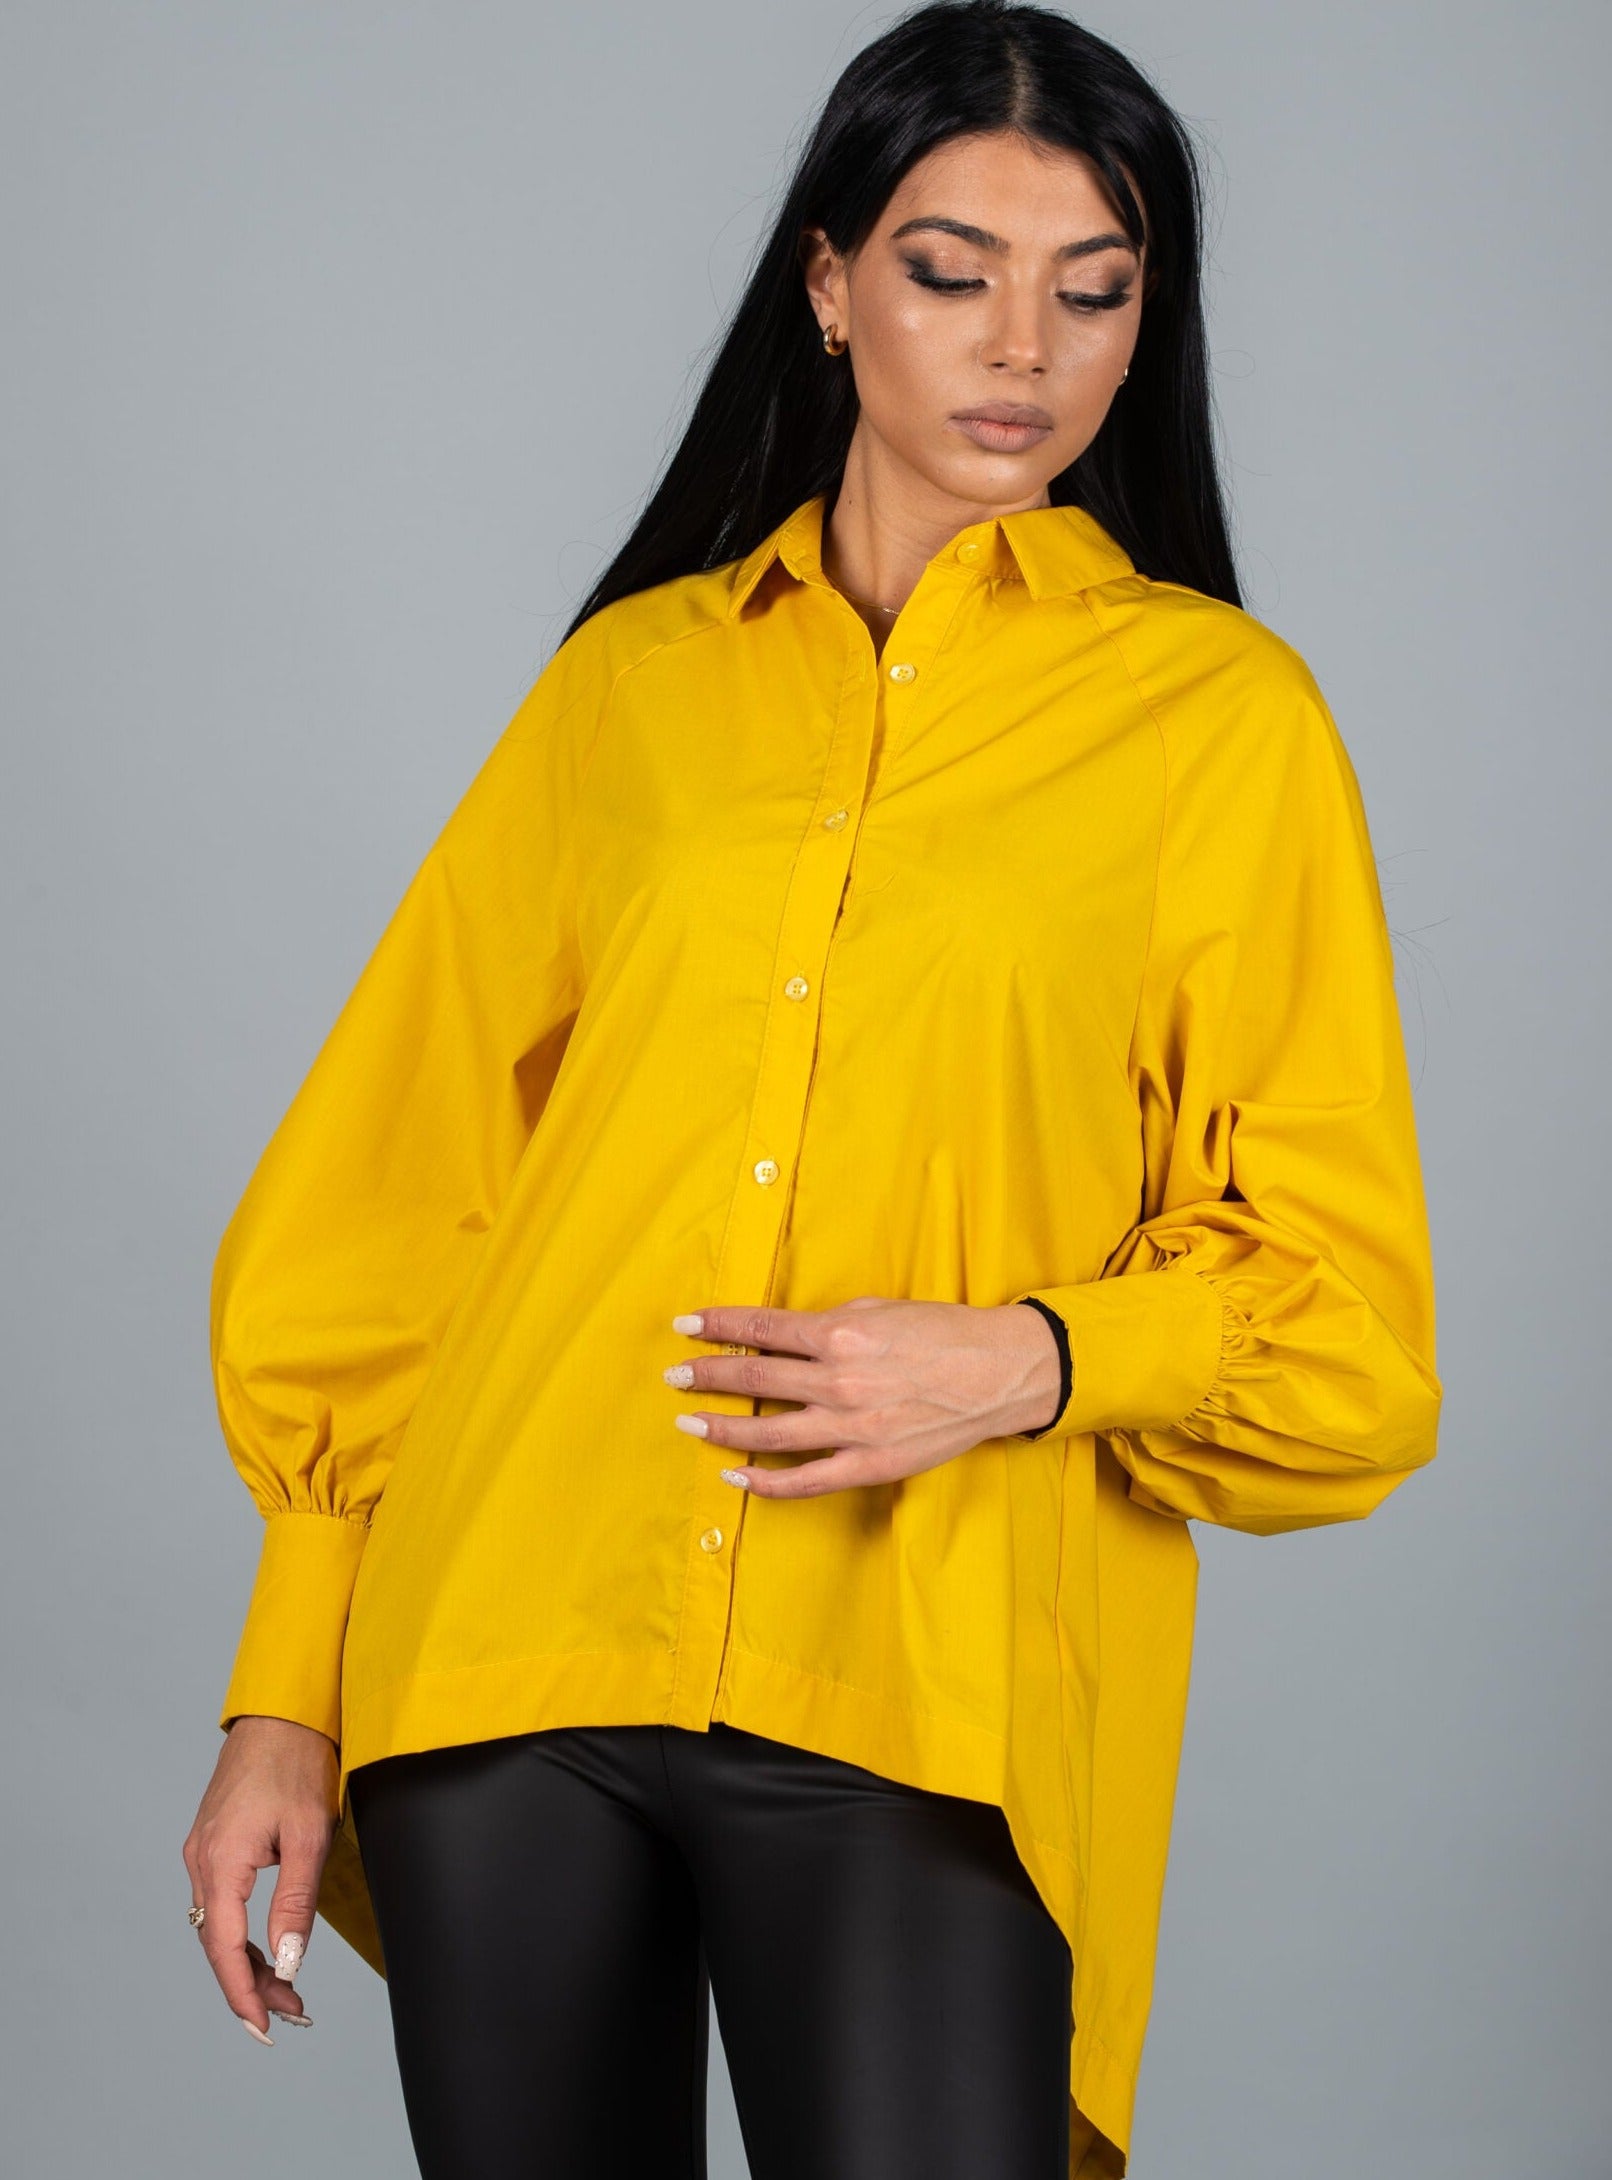 Дамска риза CLARINA  https://bvseductive.com/products/дамска-риза-clarina  20 % памук 80 % полиестер впечатляваща дамска риза в жълт цвят моделът е с асиметричен дизайн и ефектен гръб чудесно допълнение към Вашия аутфит